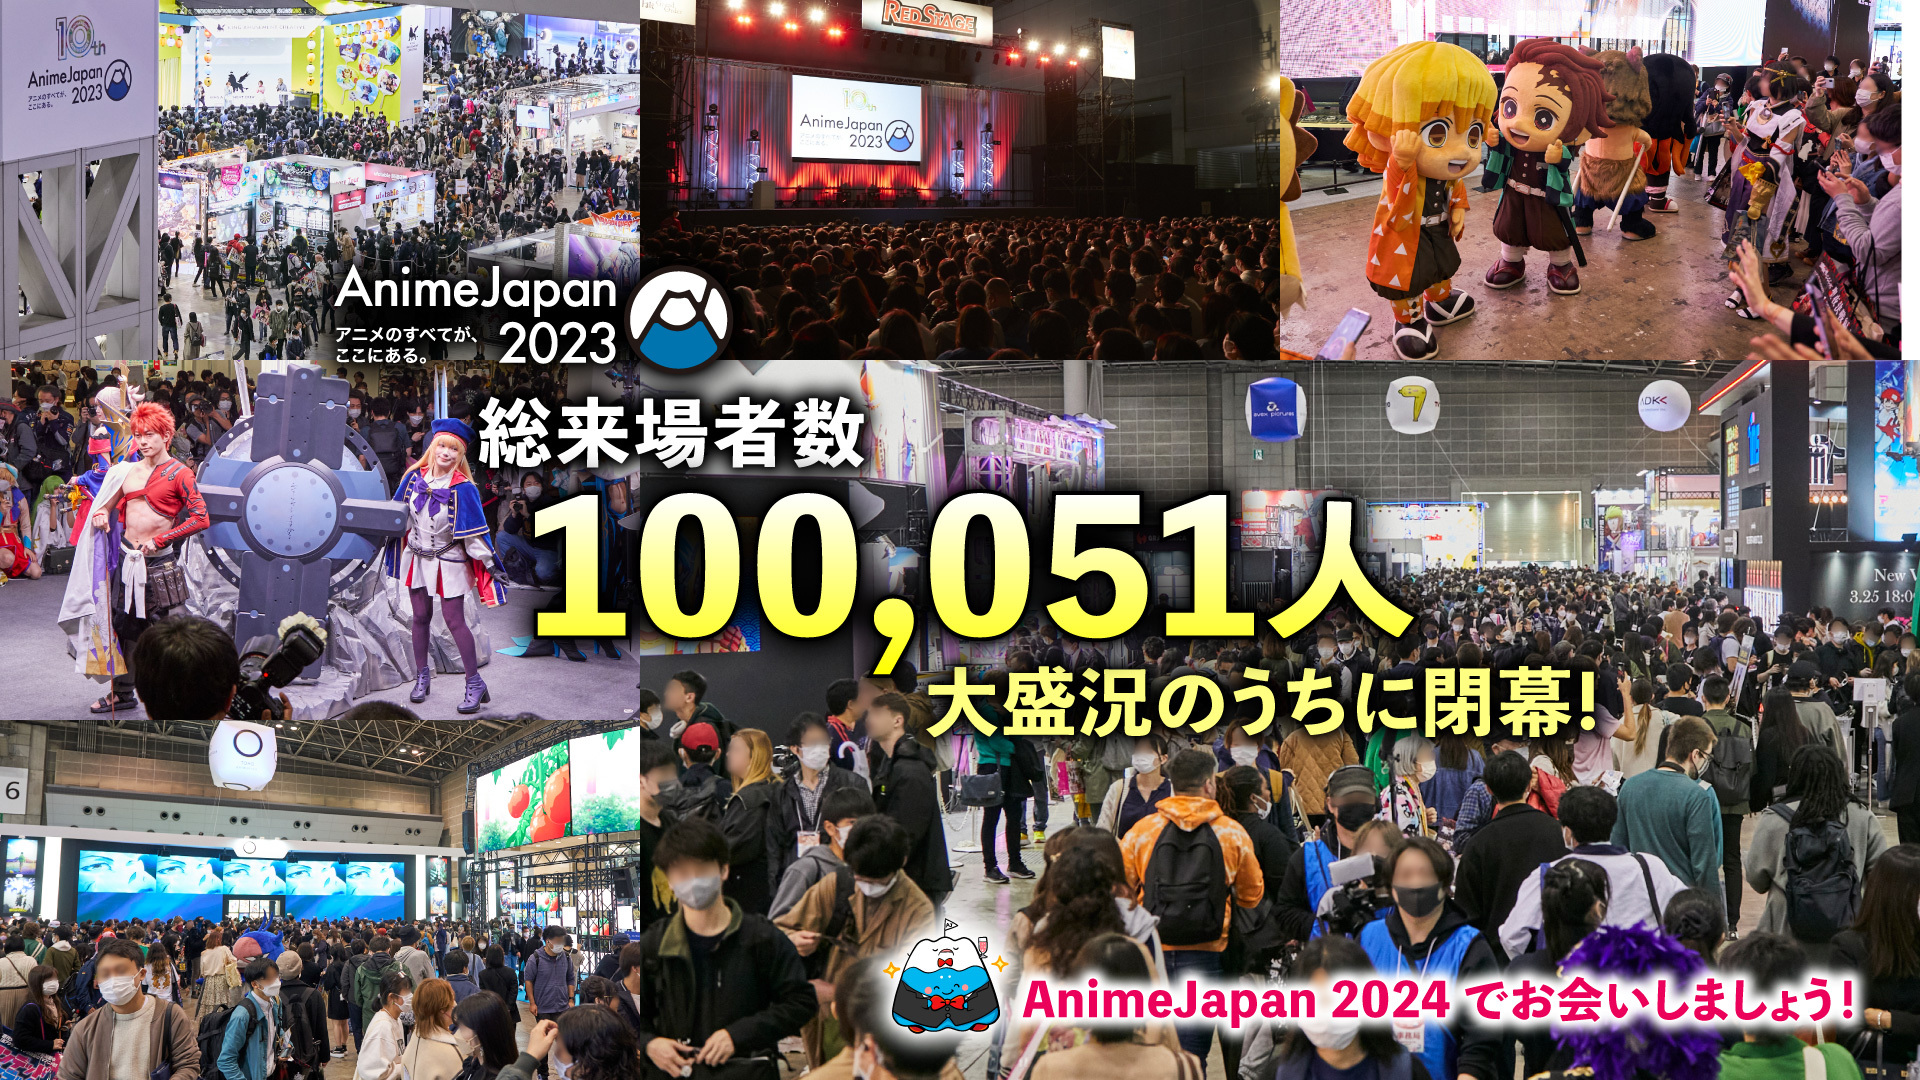 世界最大級のアニメイベントAnimeJapan 2023　
総来場者数10万人突破！！
アニメファンの熱気に溢れ大盛況のうちに閉幕！
次回開催は2024年3月に決定！